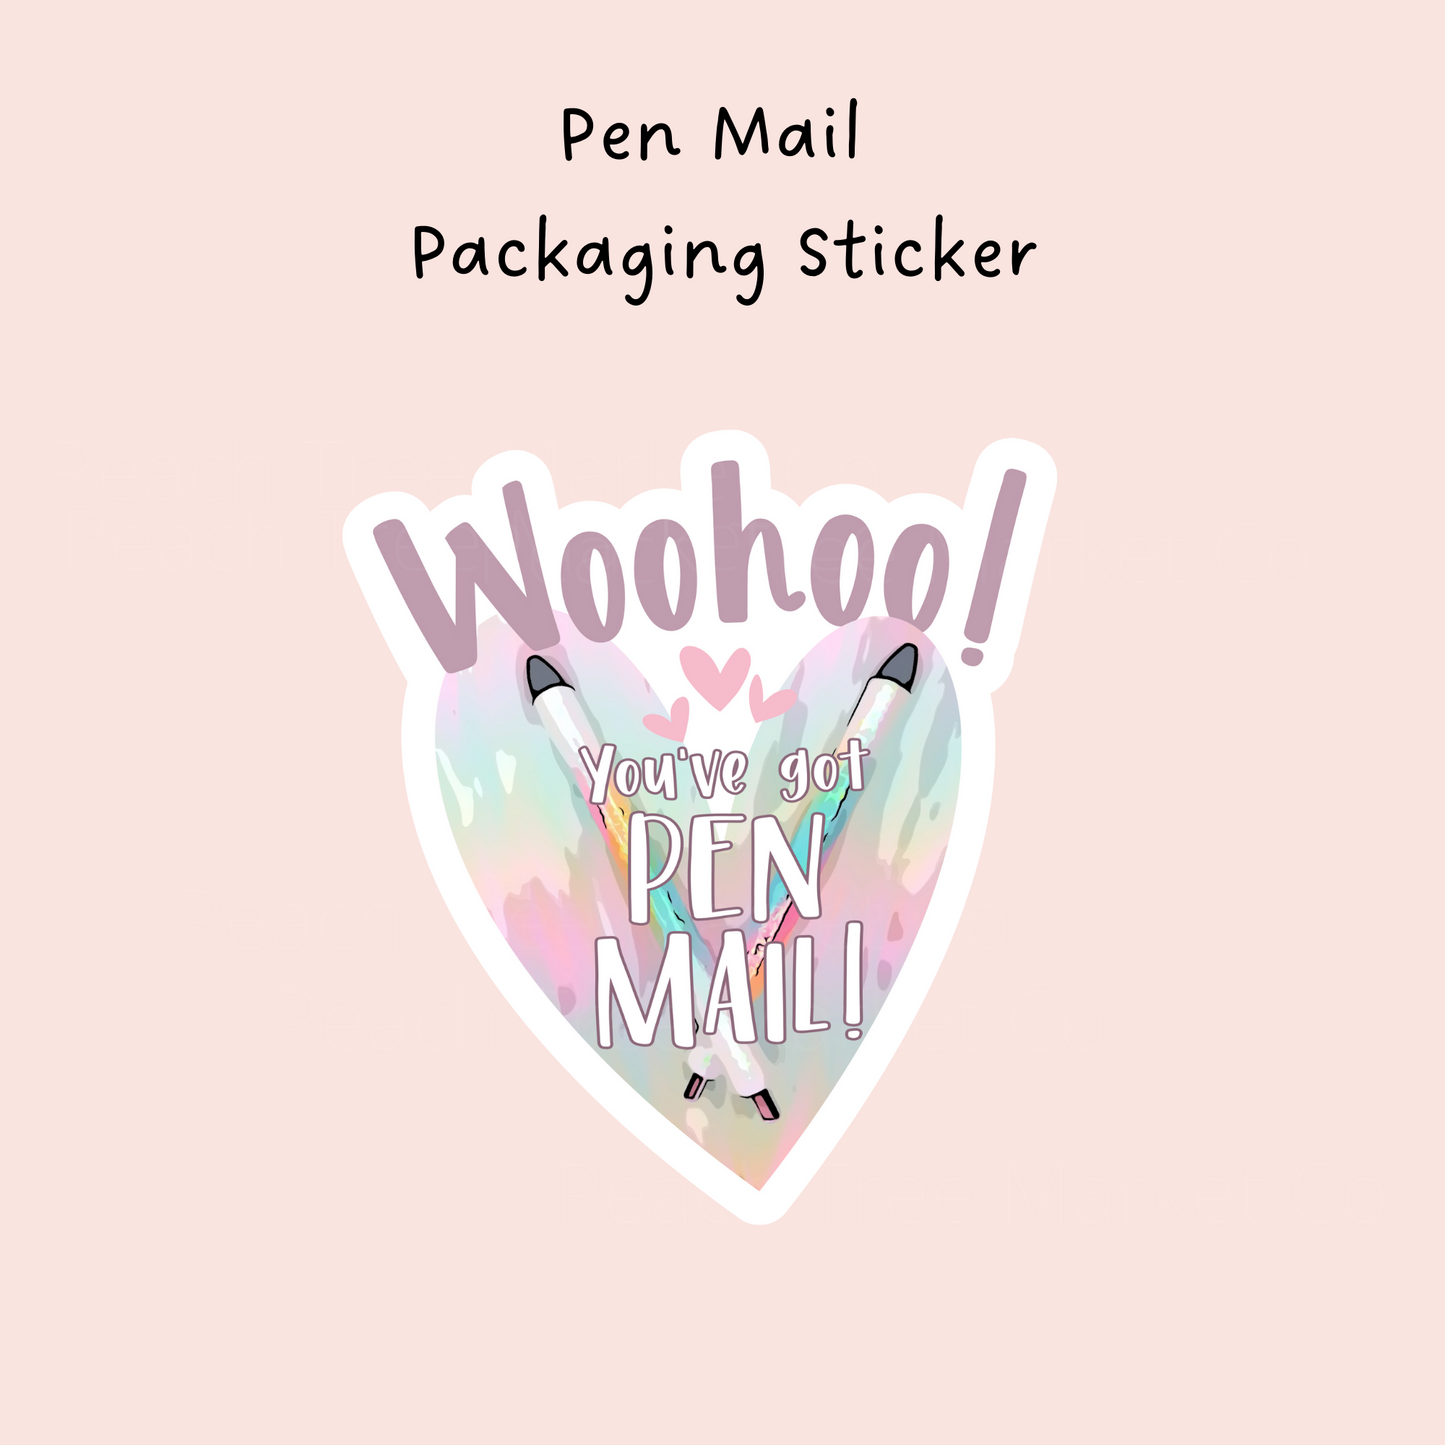 Pen Mail Packaging Sticker